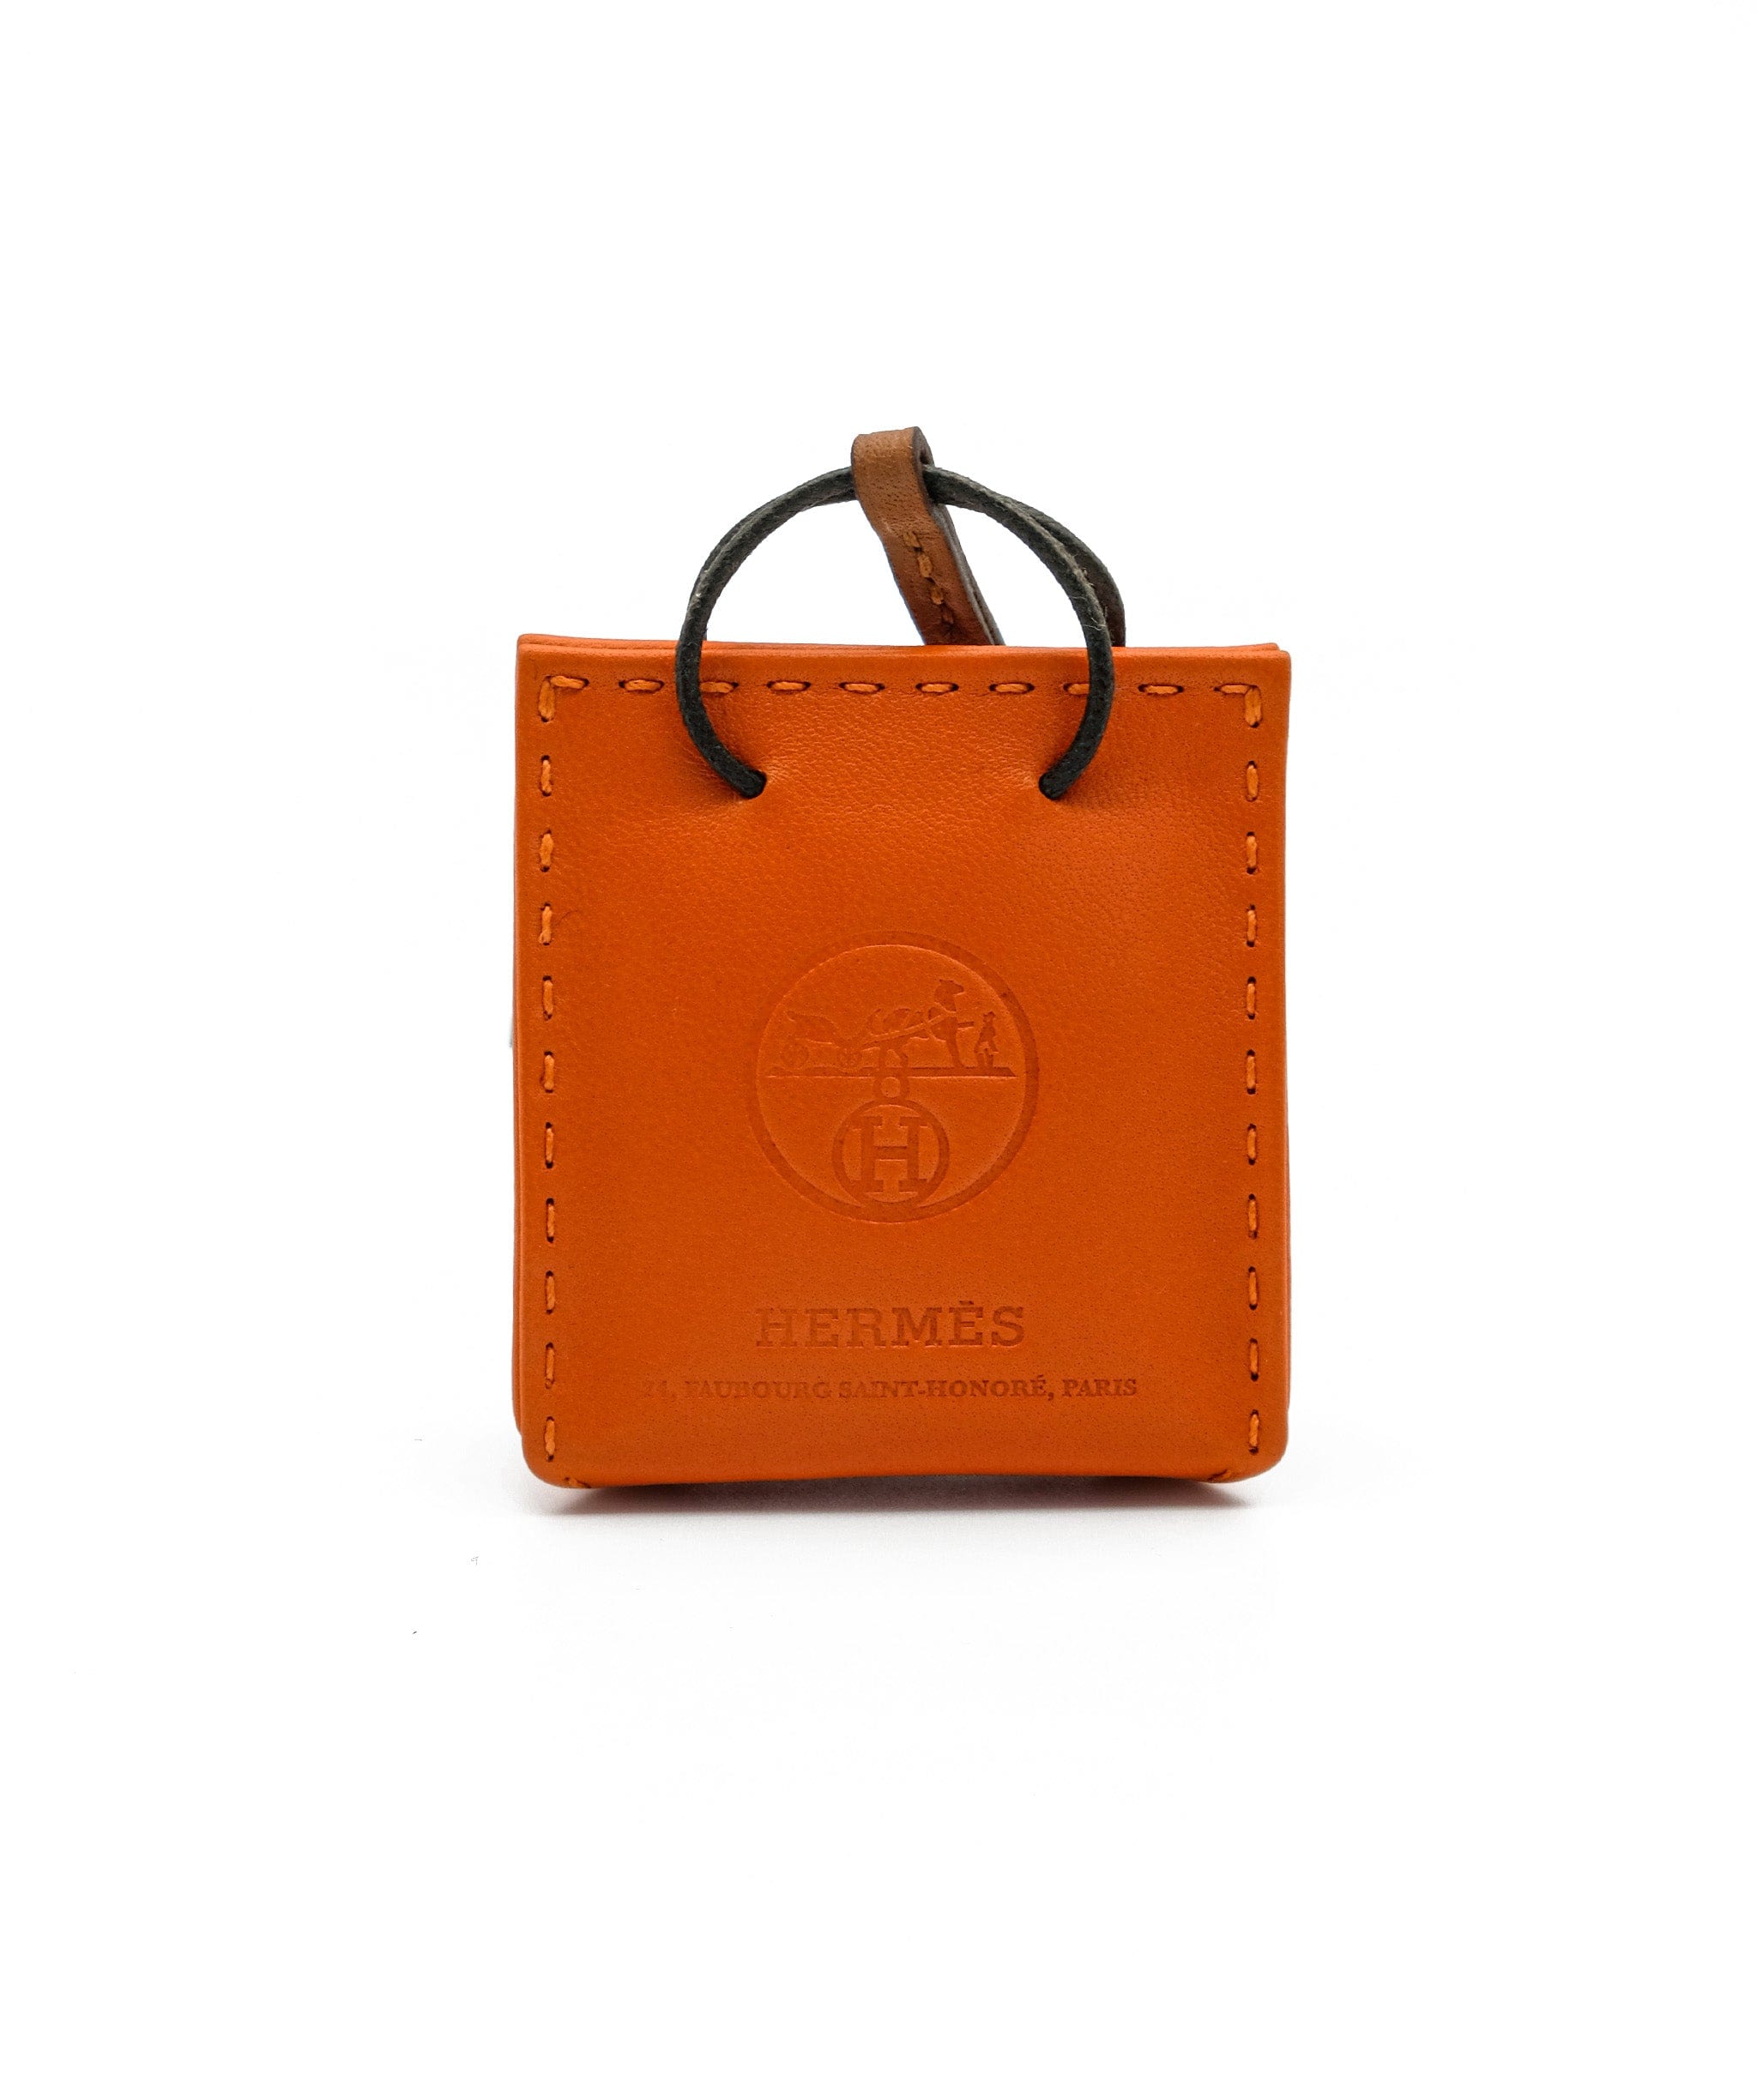 Hermès Hermes shopping bag charm AJL0033